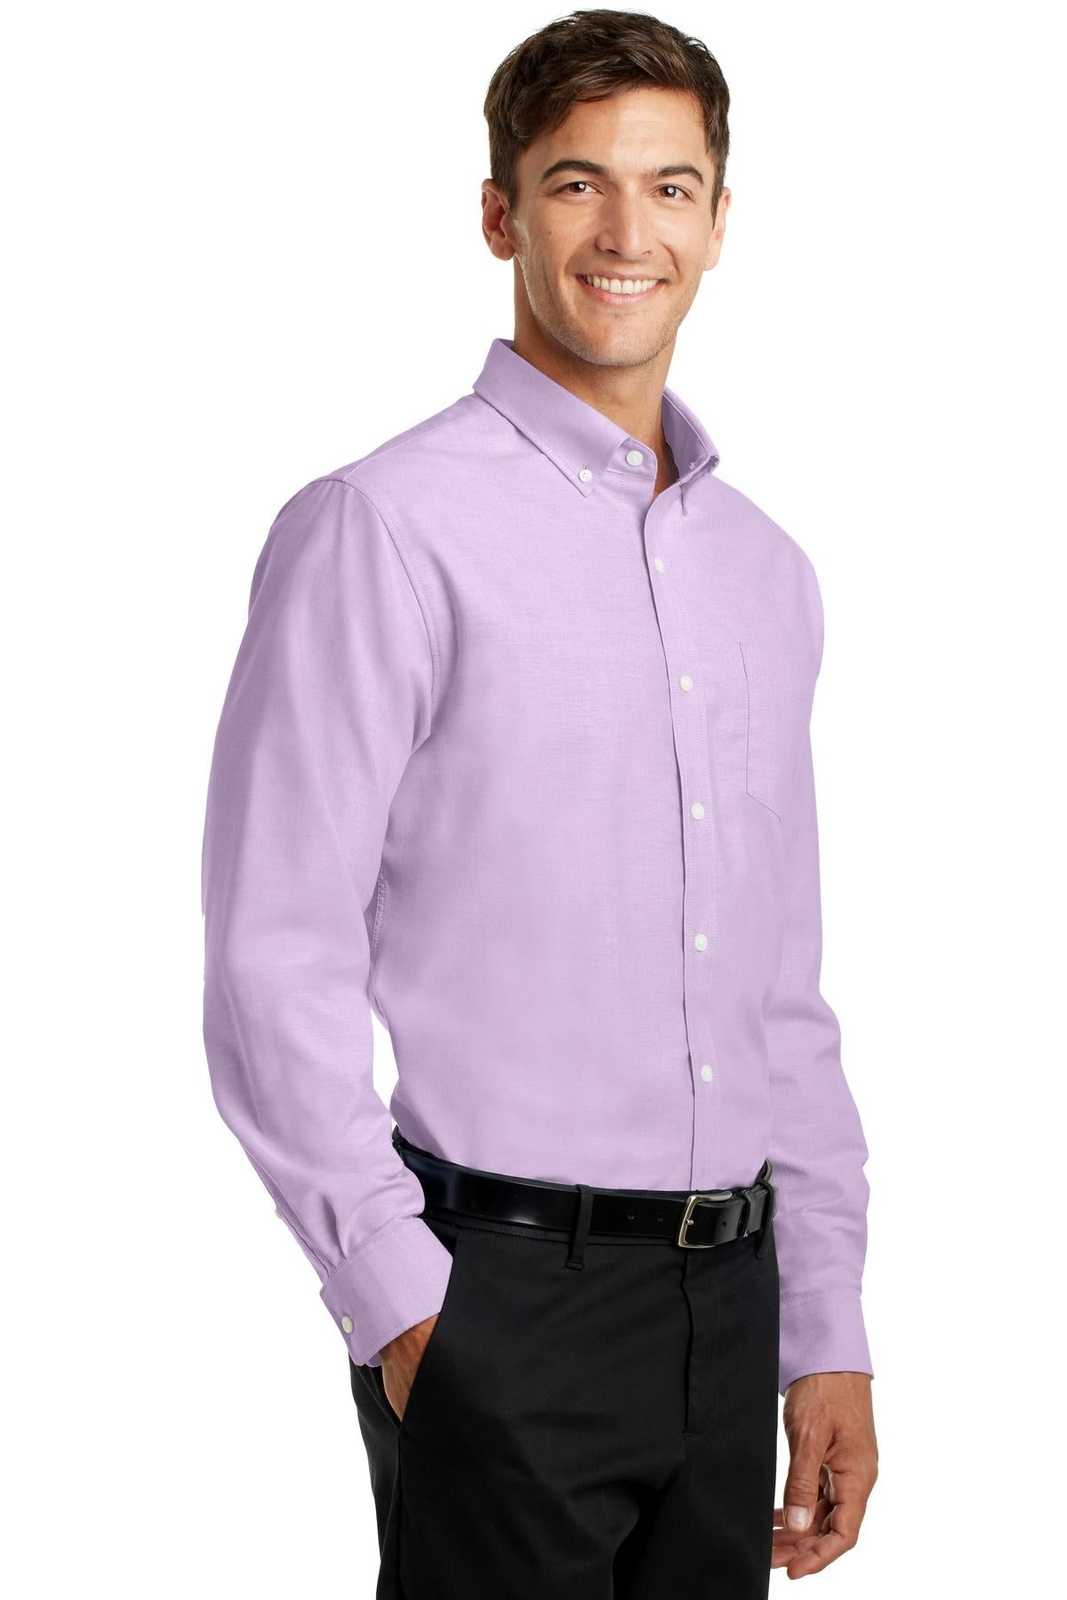 Port Authority S658 Superpro Oxford Shirt - Soft Purple - HIT a Double - 4